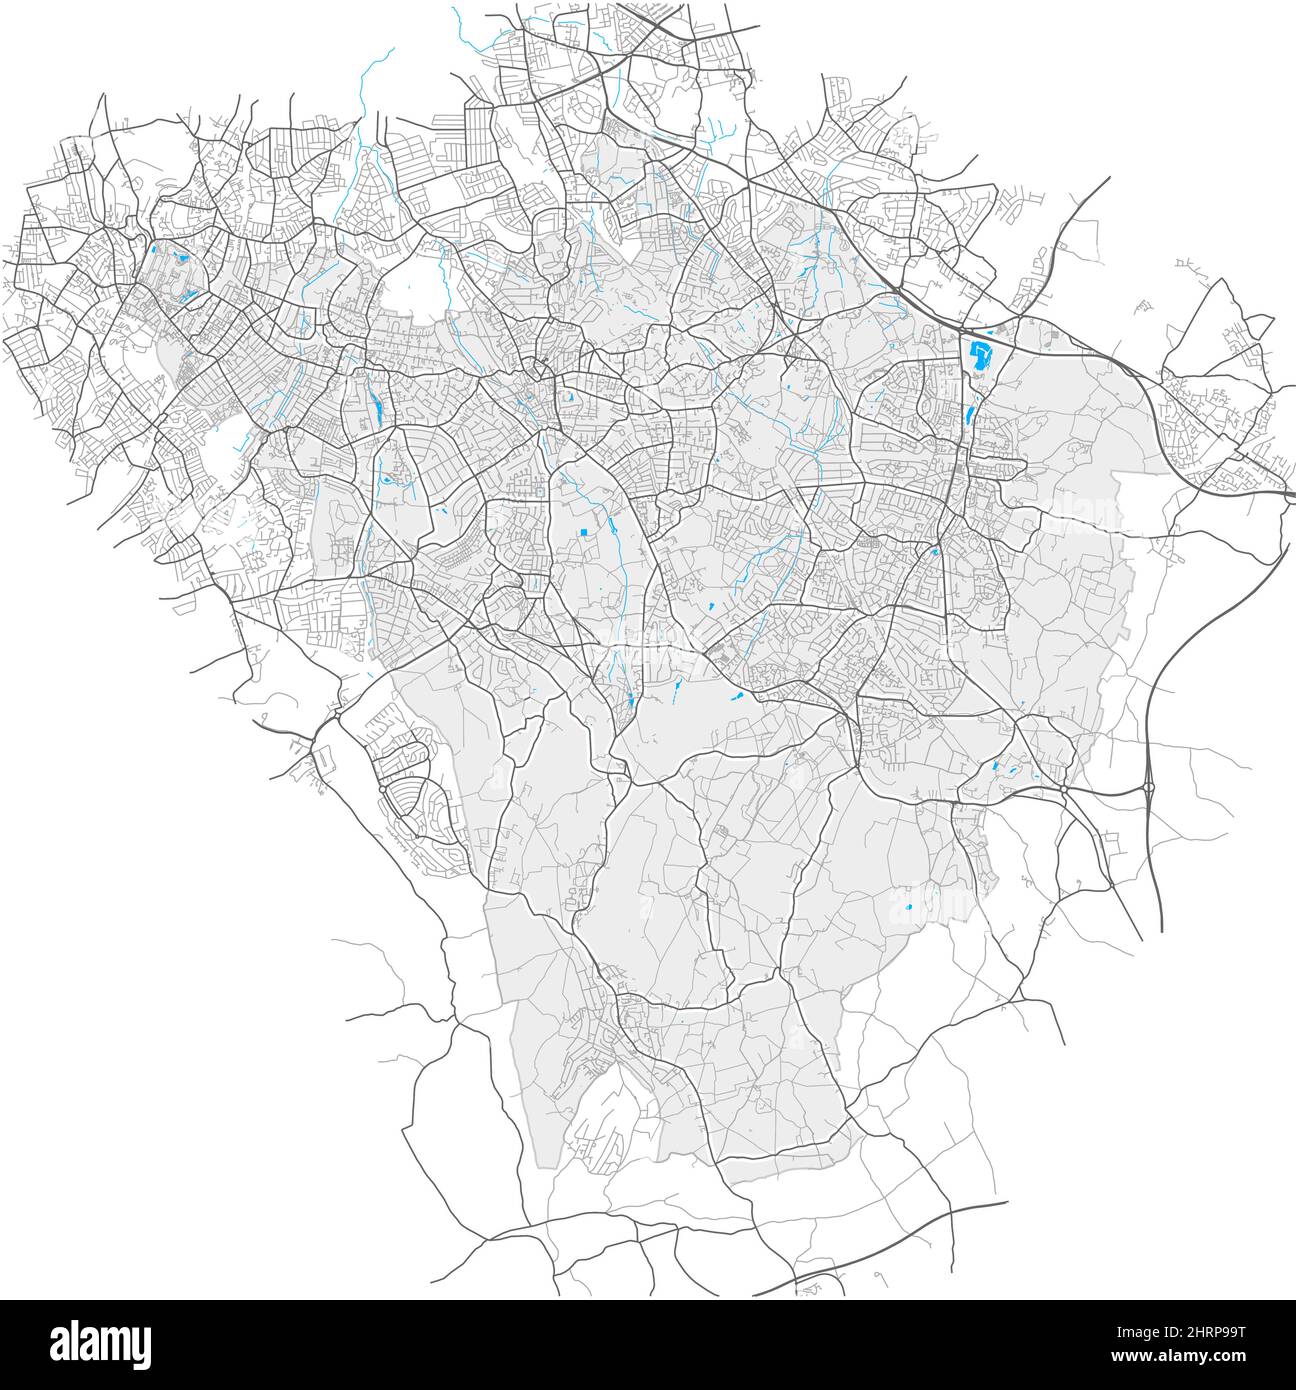 Bromley, Greater London, Großbritannien, Vektorkarte mit hoher Detailtiefe und Stadtgrenzen sowie bearbeitbaren Pfaden. Weiße Umrisse für Hauptstraßen. Viele kleinere p Stock Vektor